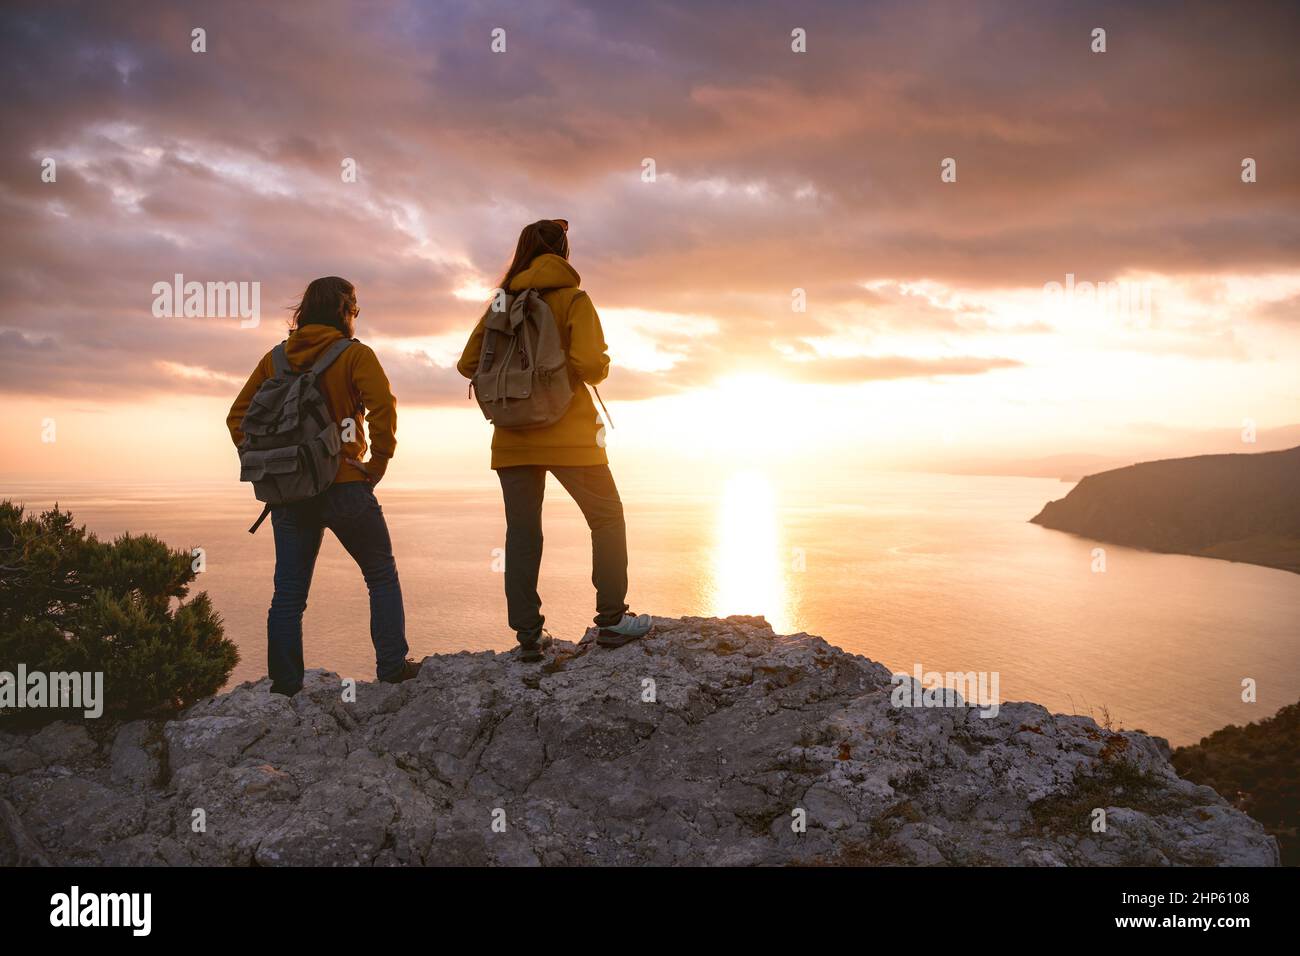 Zwei Wanderer mit Rucksäcken blicken vom Aussichtspunkt aus auf den Sonnenuntergang Stockfoto